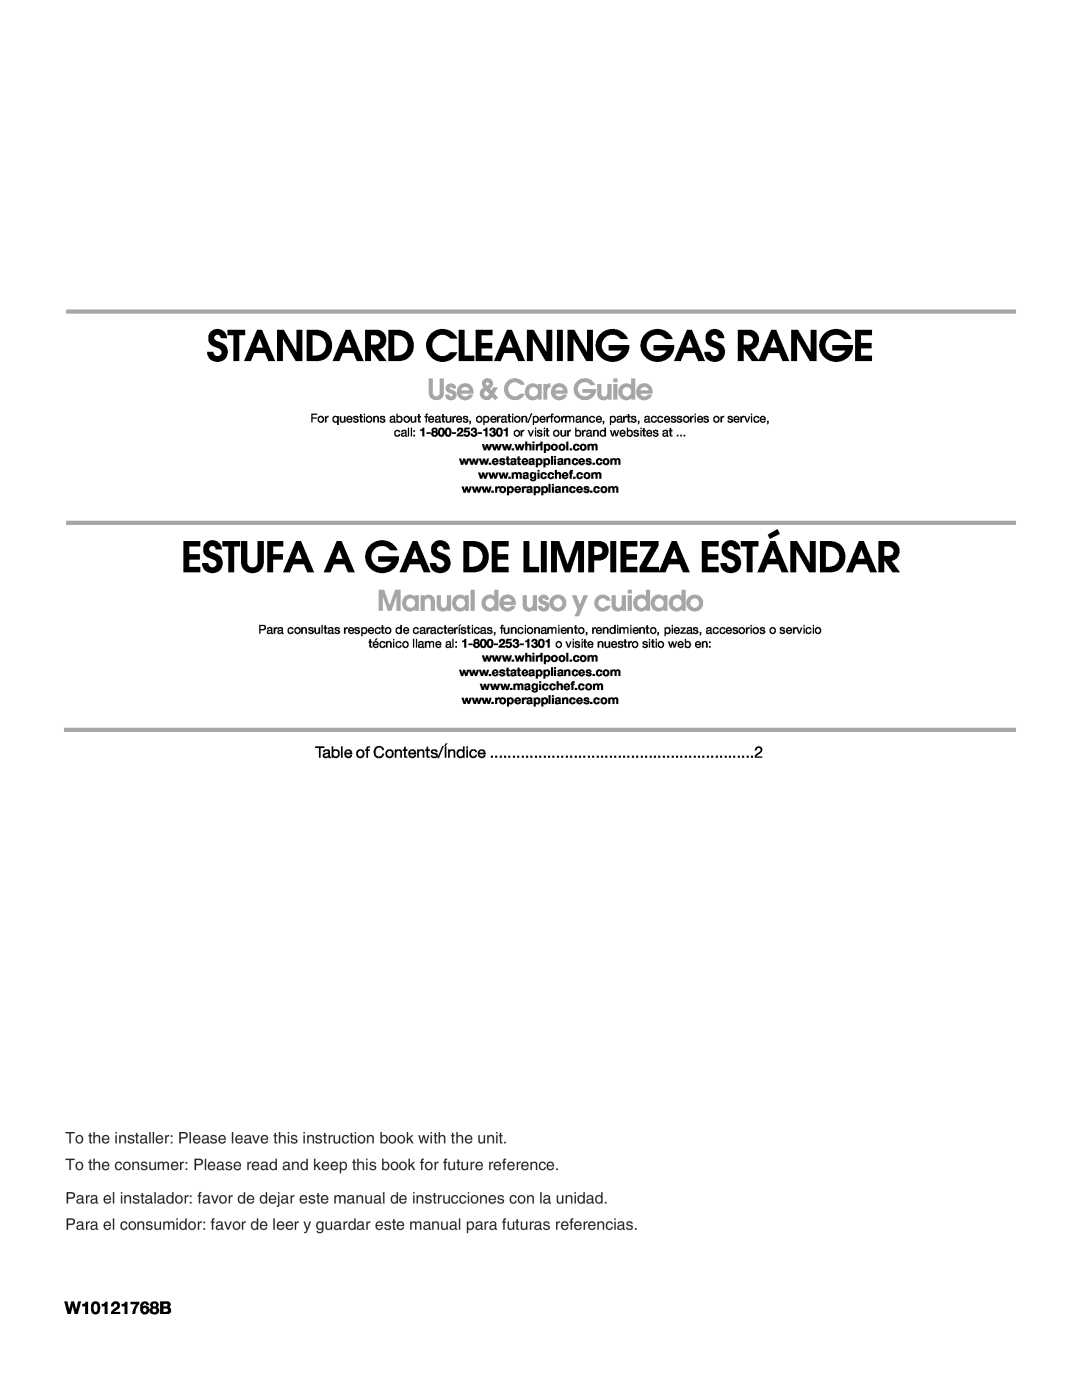 Whirlpool W10121768B manual Standard Cleaning Gas Range, Estufa A Gas De Limpieza Estándar, Use & Care Guide 